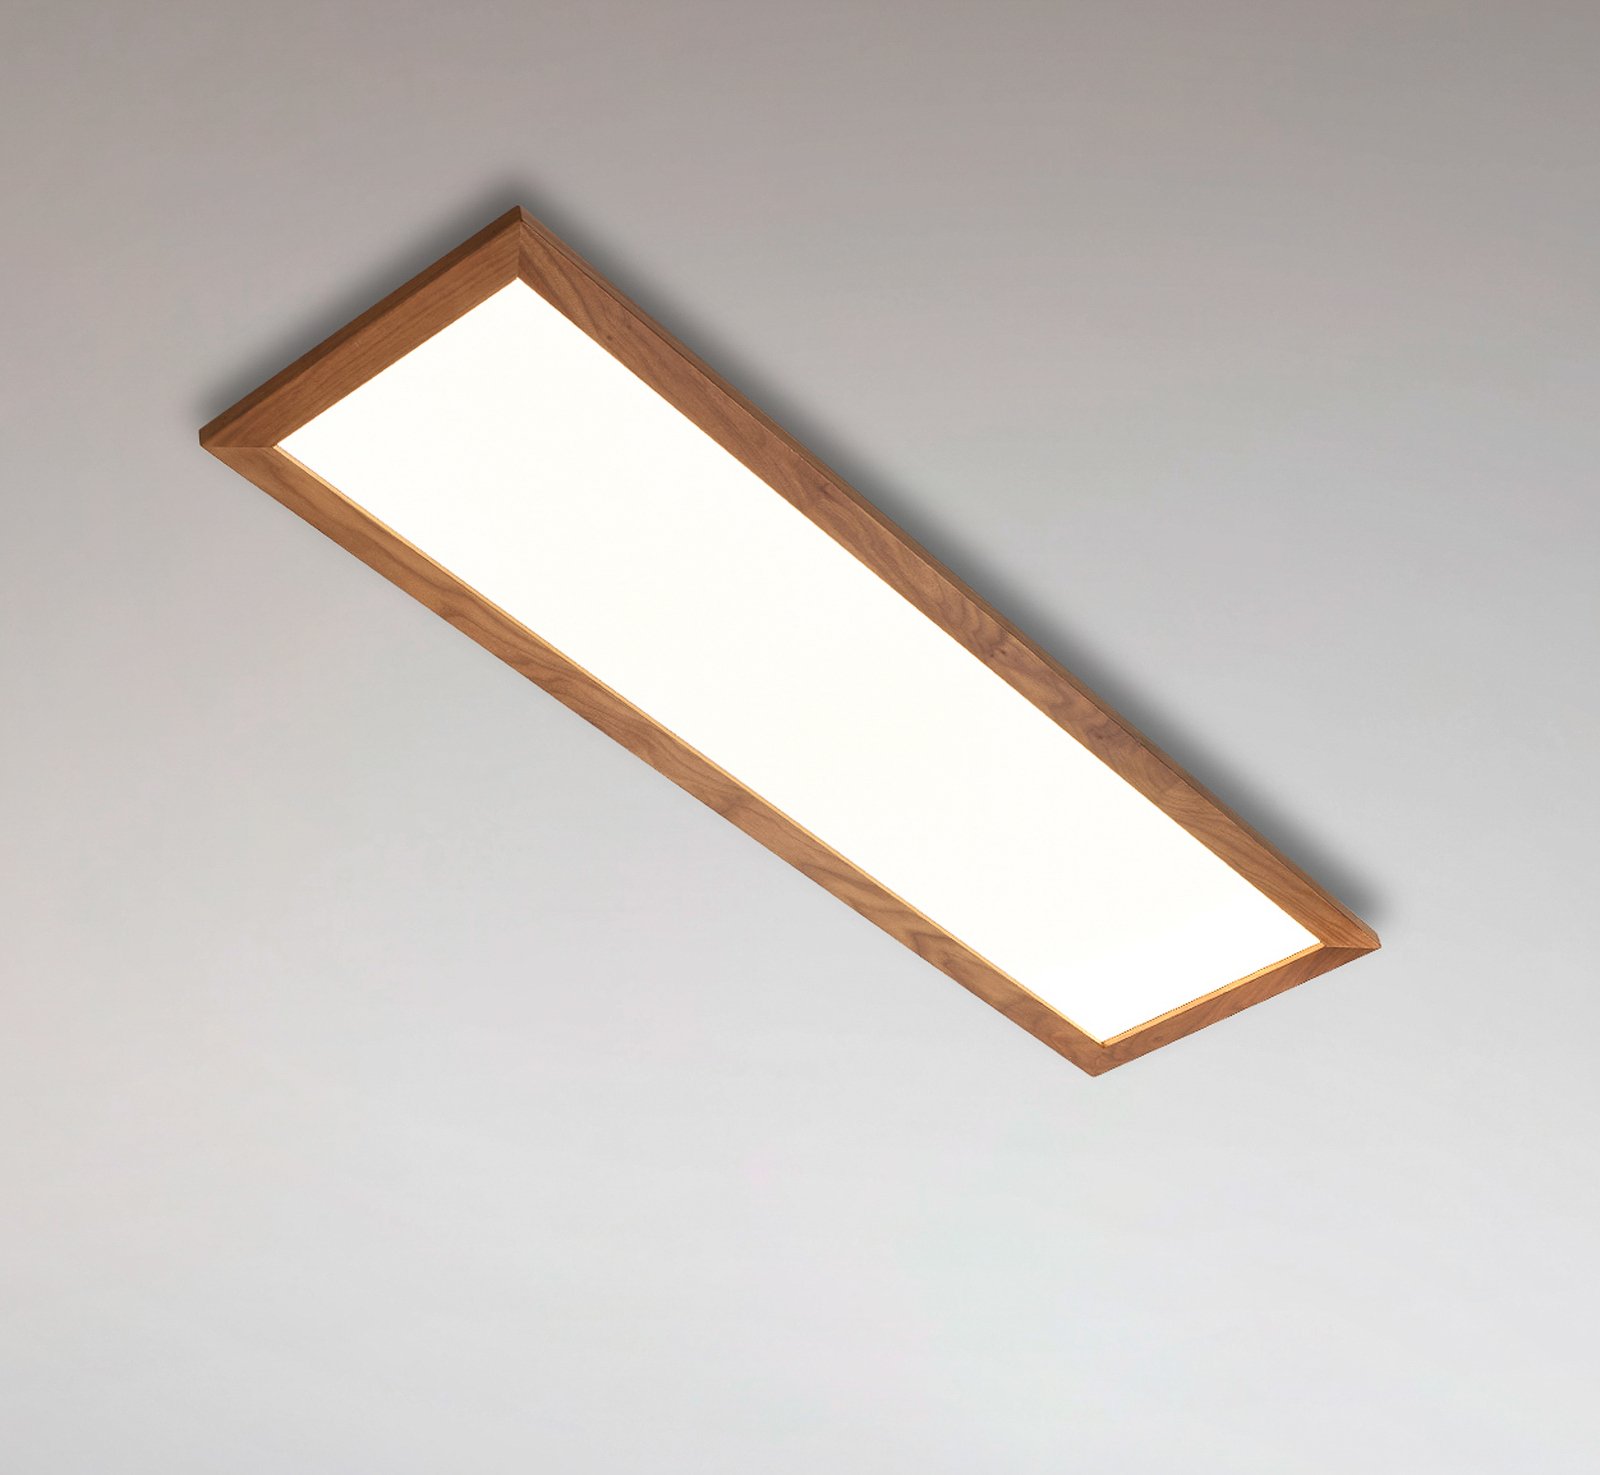 Quitani Aurinor LED panel, orech, 125 cm